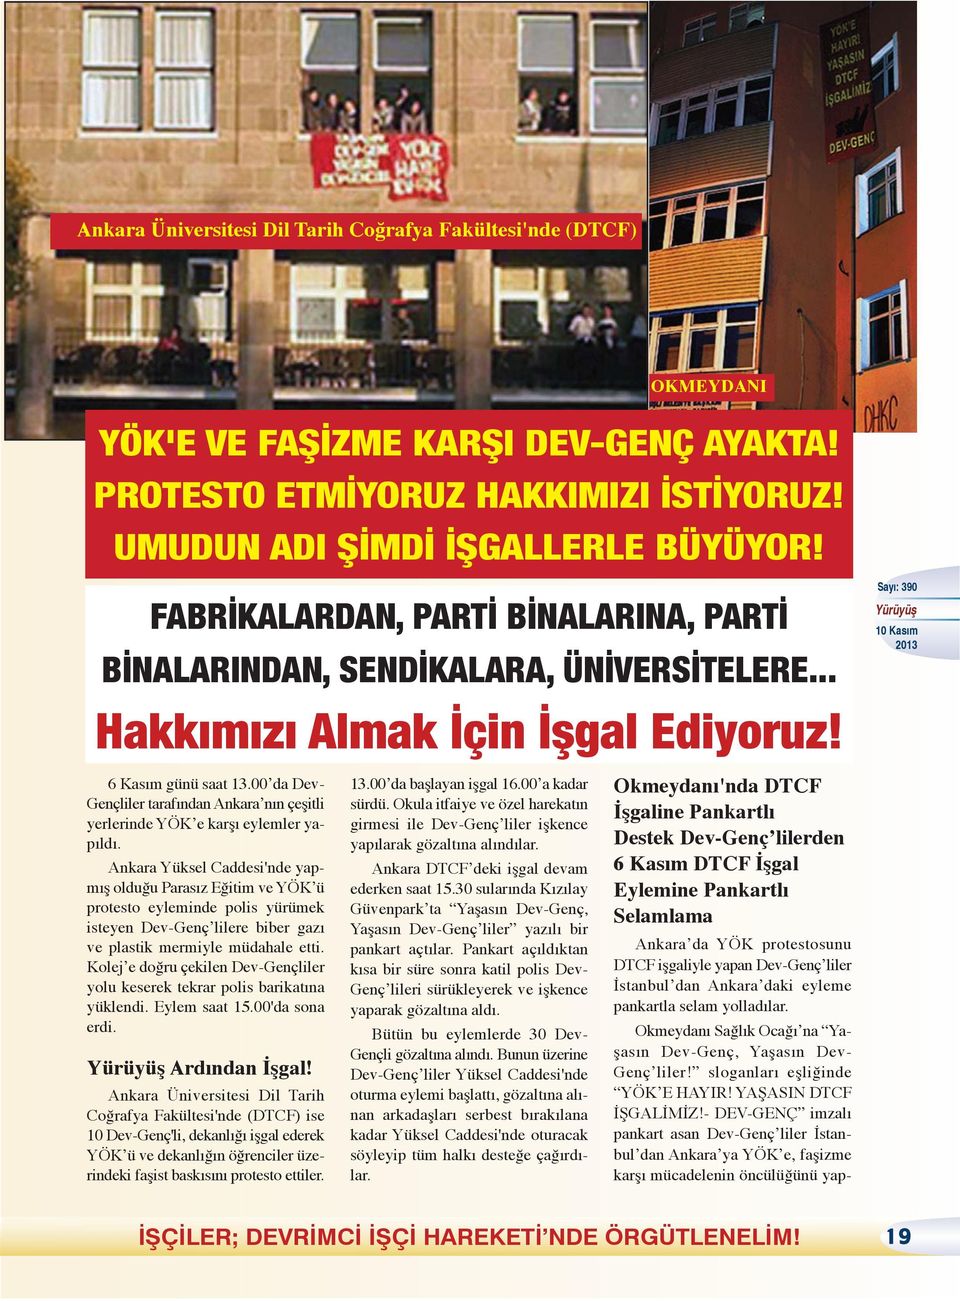 00 da Dev- Gençliler tarafından Ankara nın çeşitli yerlerinde YÖK e karşı eylemler yapıldı.